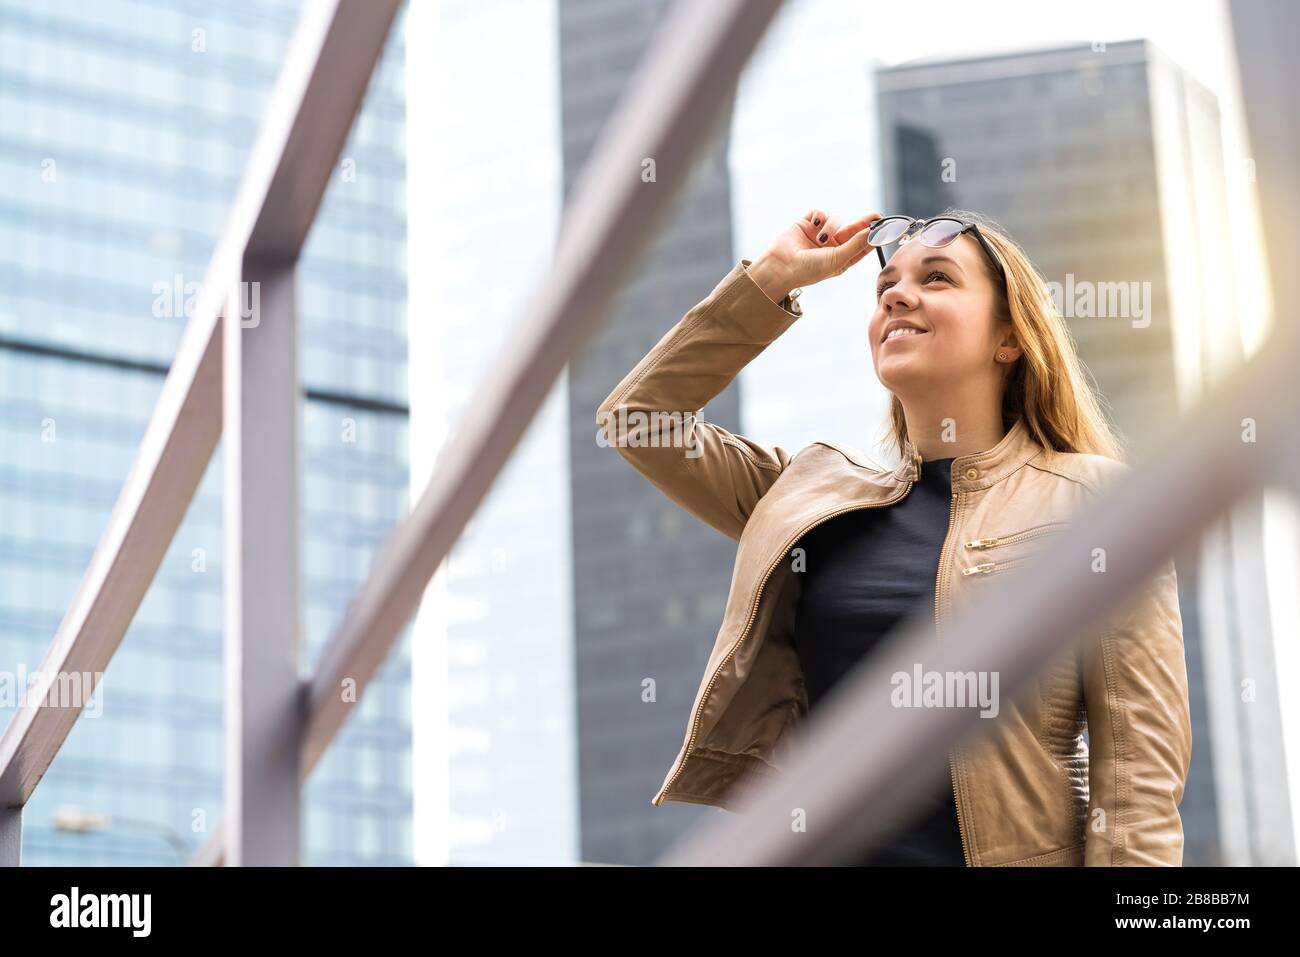 Fröhliche lächelnde Frau in der Großstadt mit Wolkenkratzern. Person, die Sonnenbrille hebt, nach oben schaut und lächelt. Positiver urbaner Lebensstil. Stockfoto